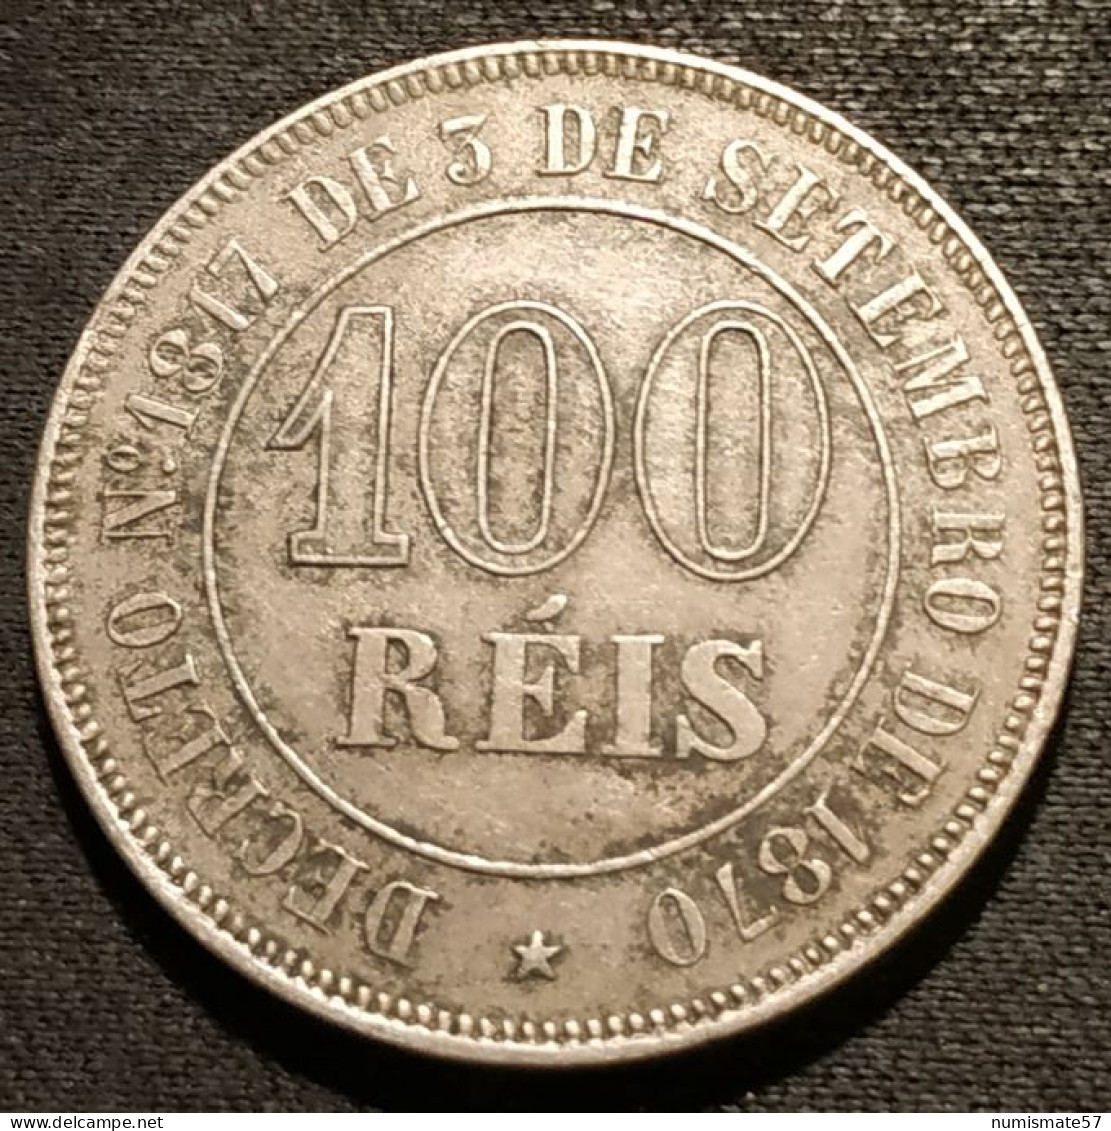 BRESIL - 100 REIS 1871 - Pedro II - KM 477 - Brasil - Brazil - Brasil